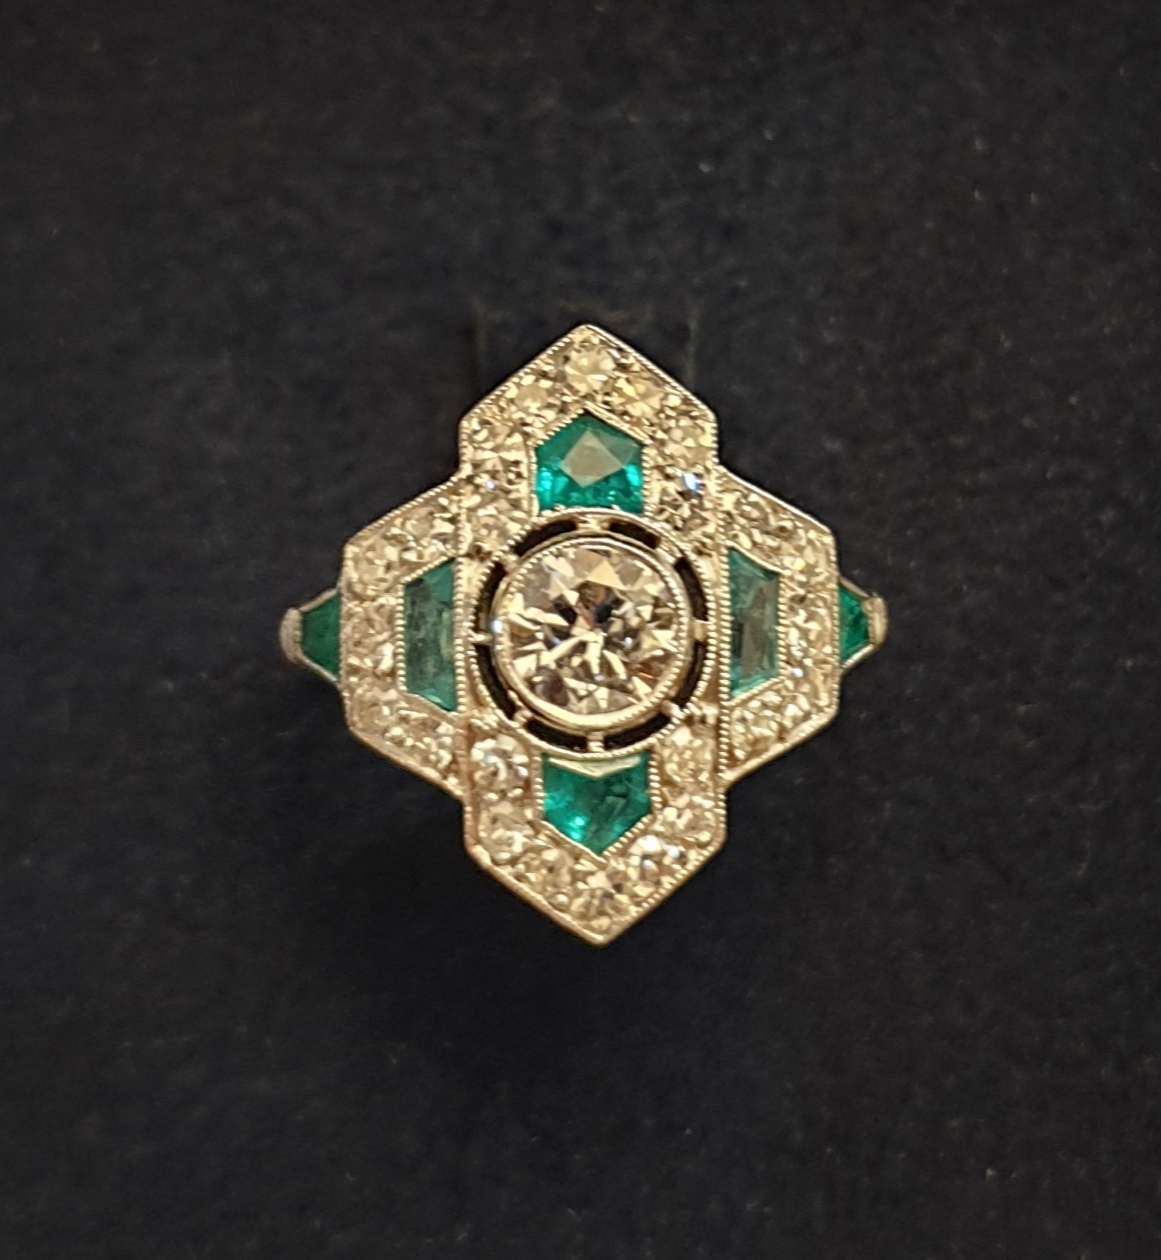 anello antico smeraldi brillanti